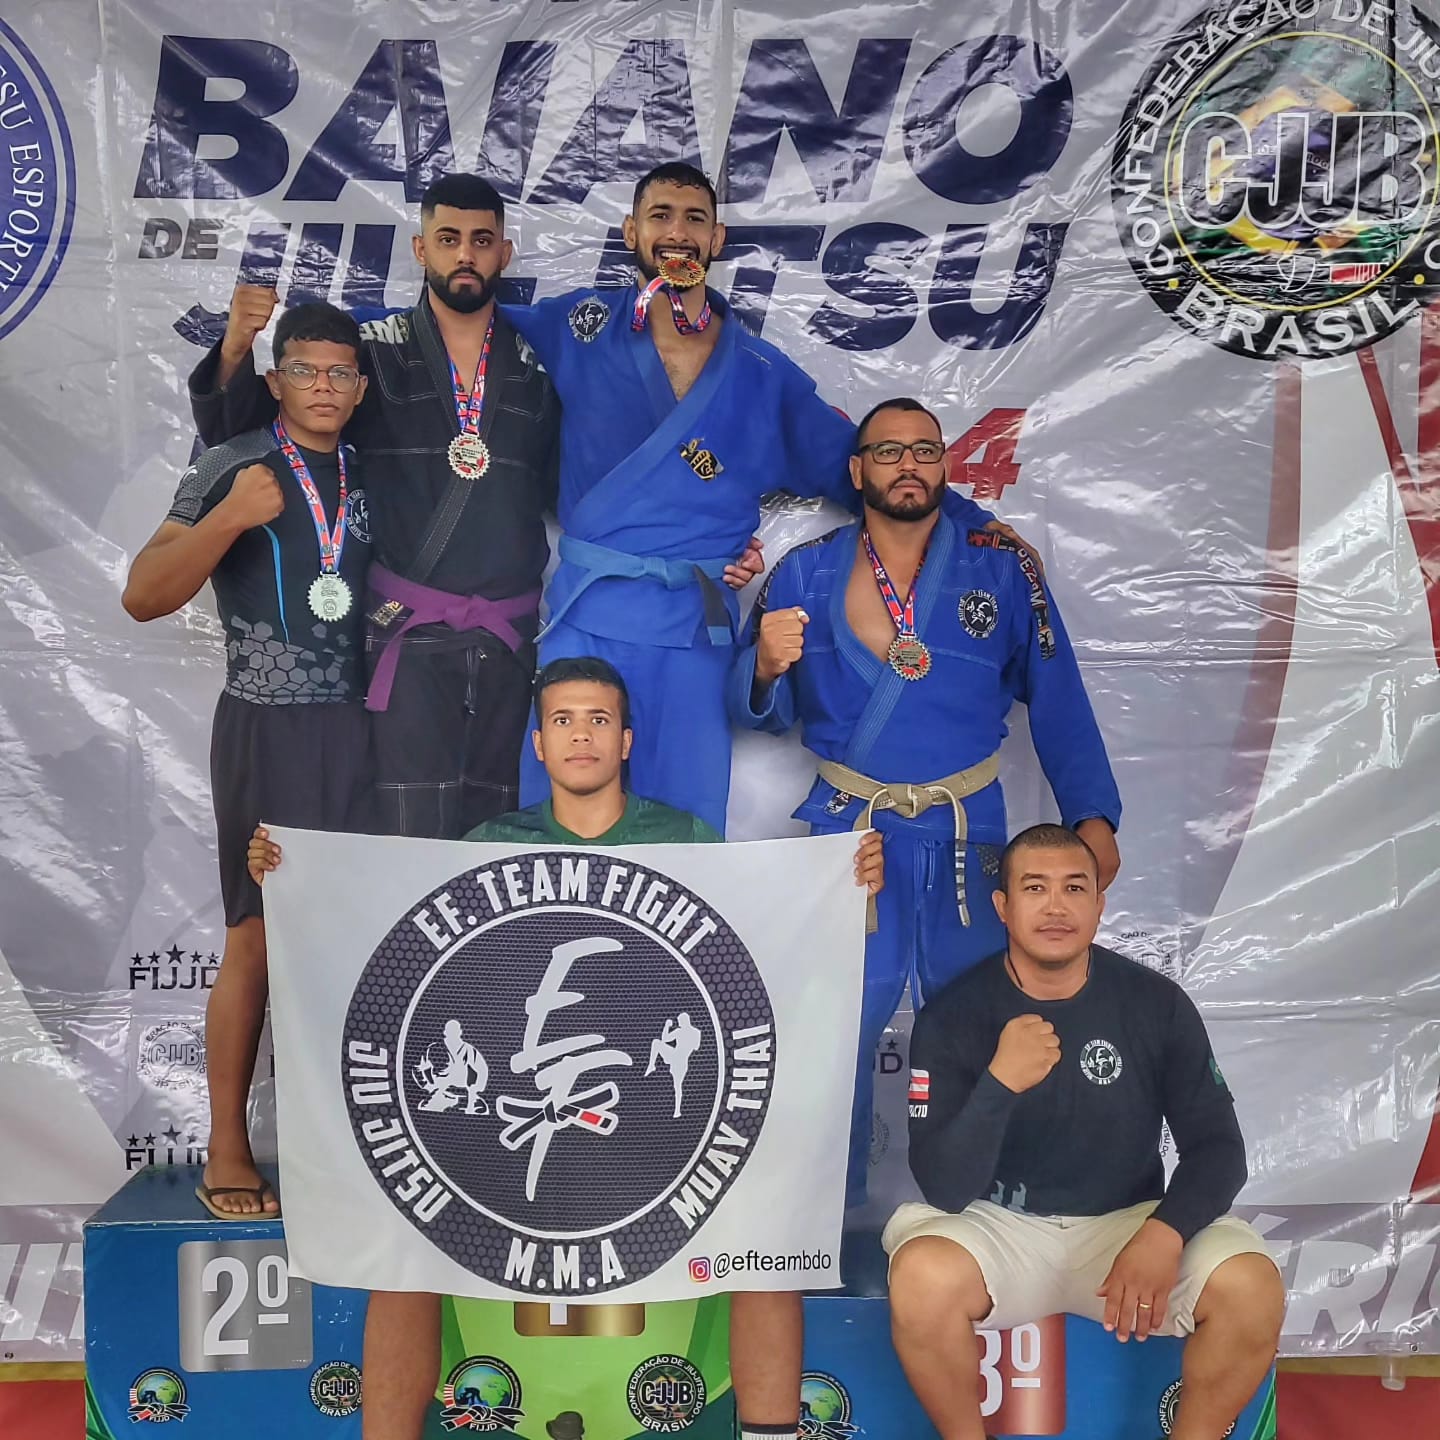 Equipe brumadense de artes marciais consegue boa colocação na 2ª etapa do campeonato baiano de Jiu Jitsu realizado em Mucugê